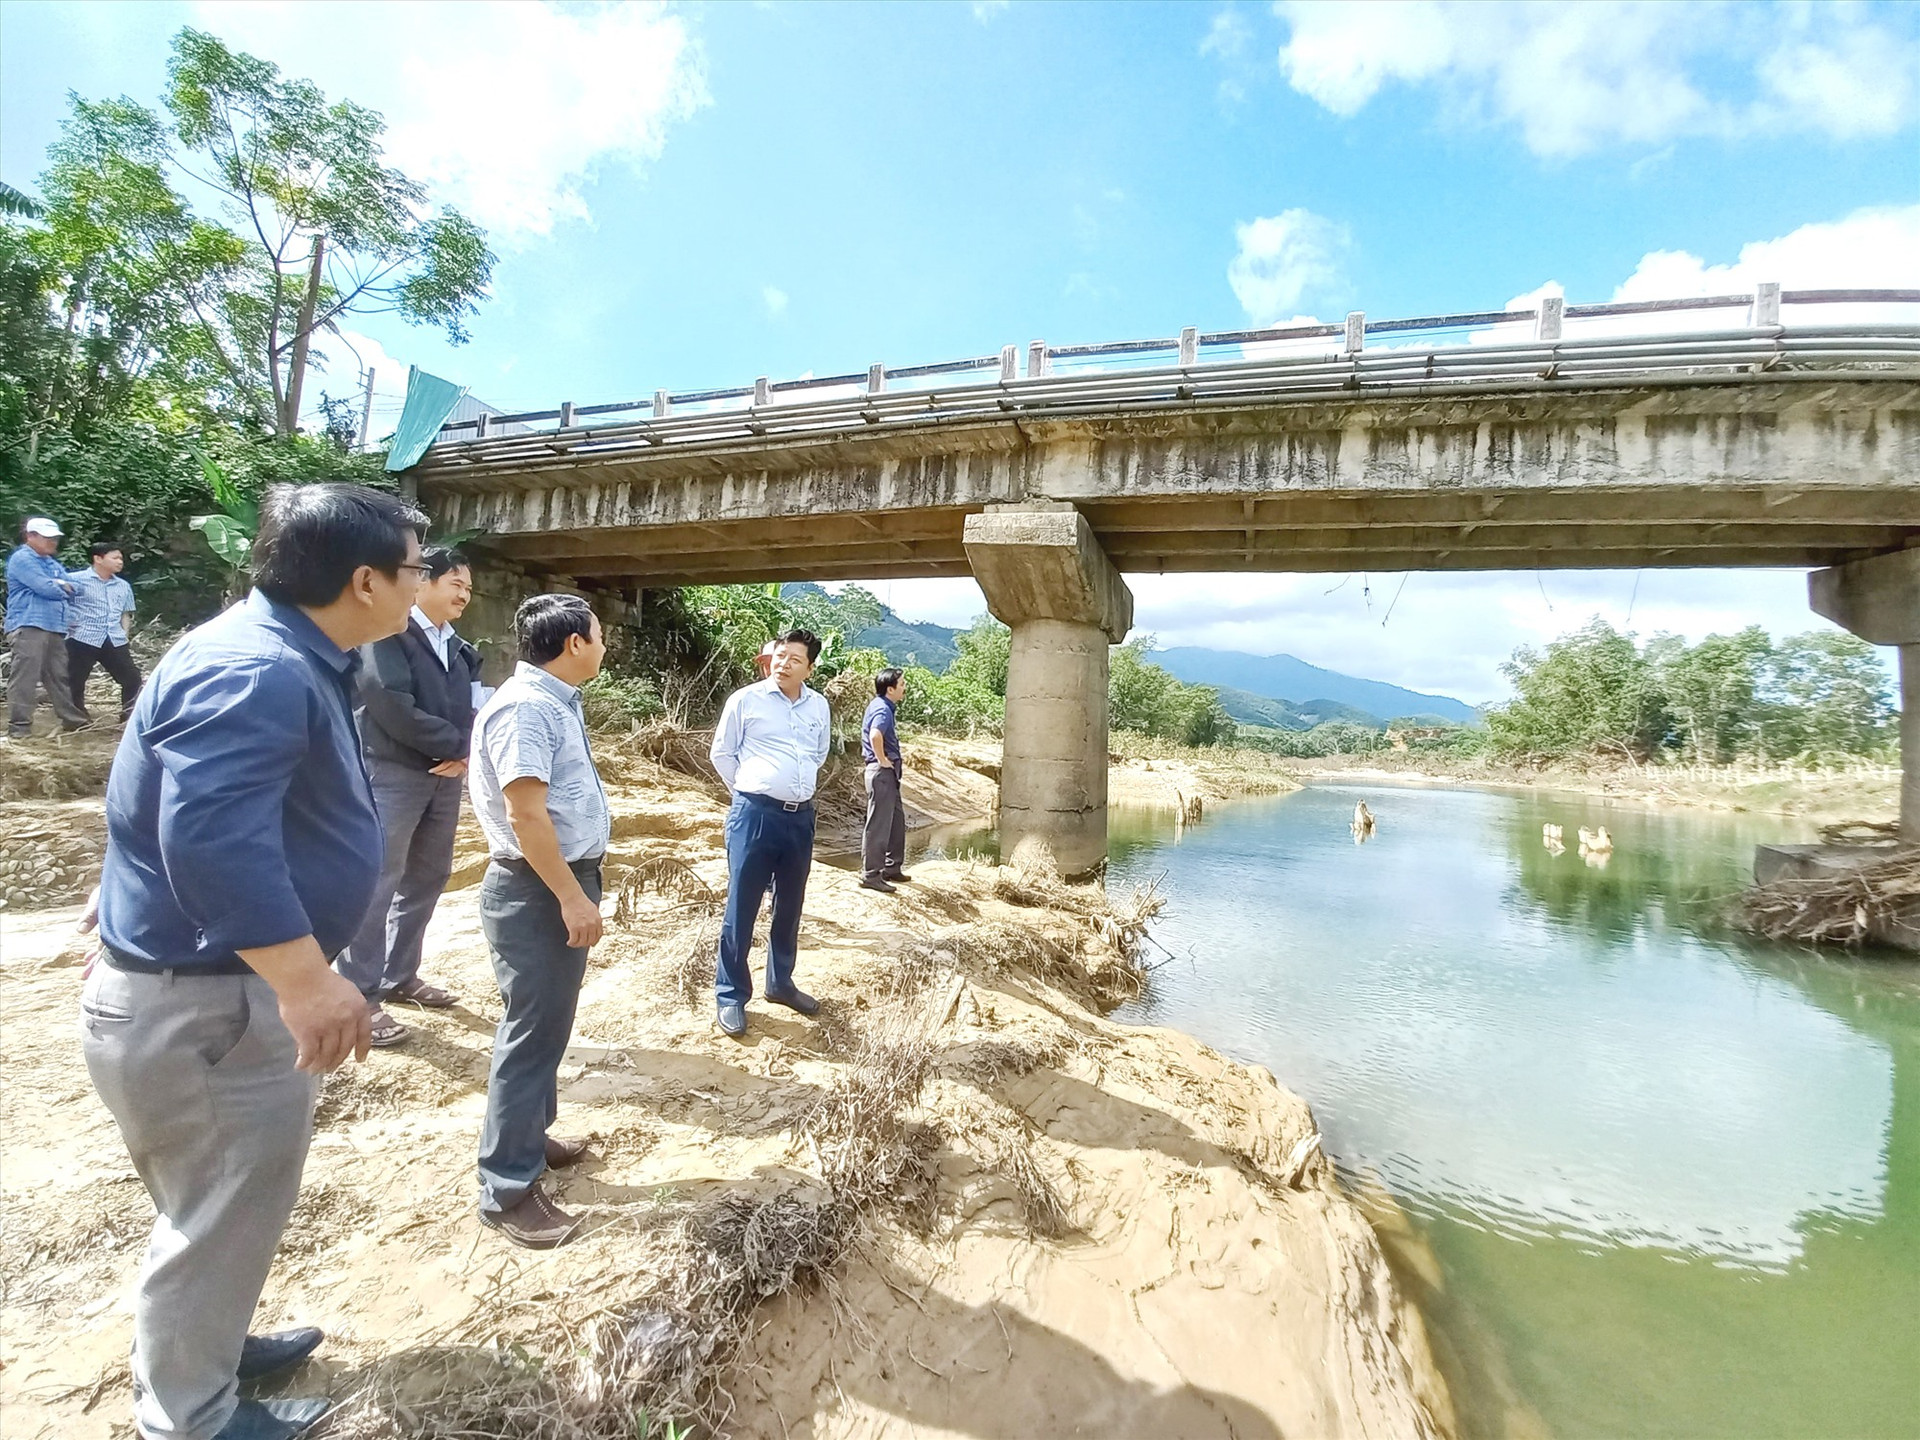 Cầu Sông Vầu (nối xã Ba với xã Tư) bị hư hỏng nặng do lũ lụt cần được đầu tư xây dựng mới. Ảnh: C.T